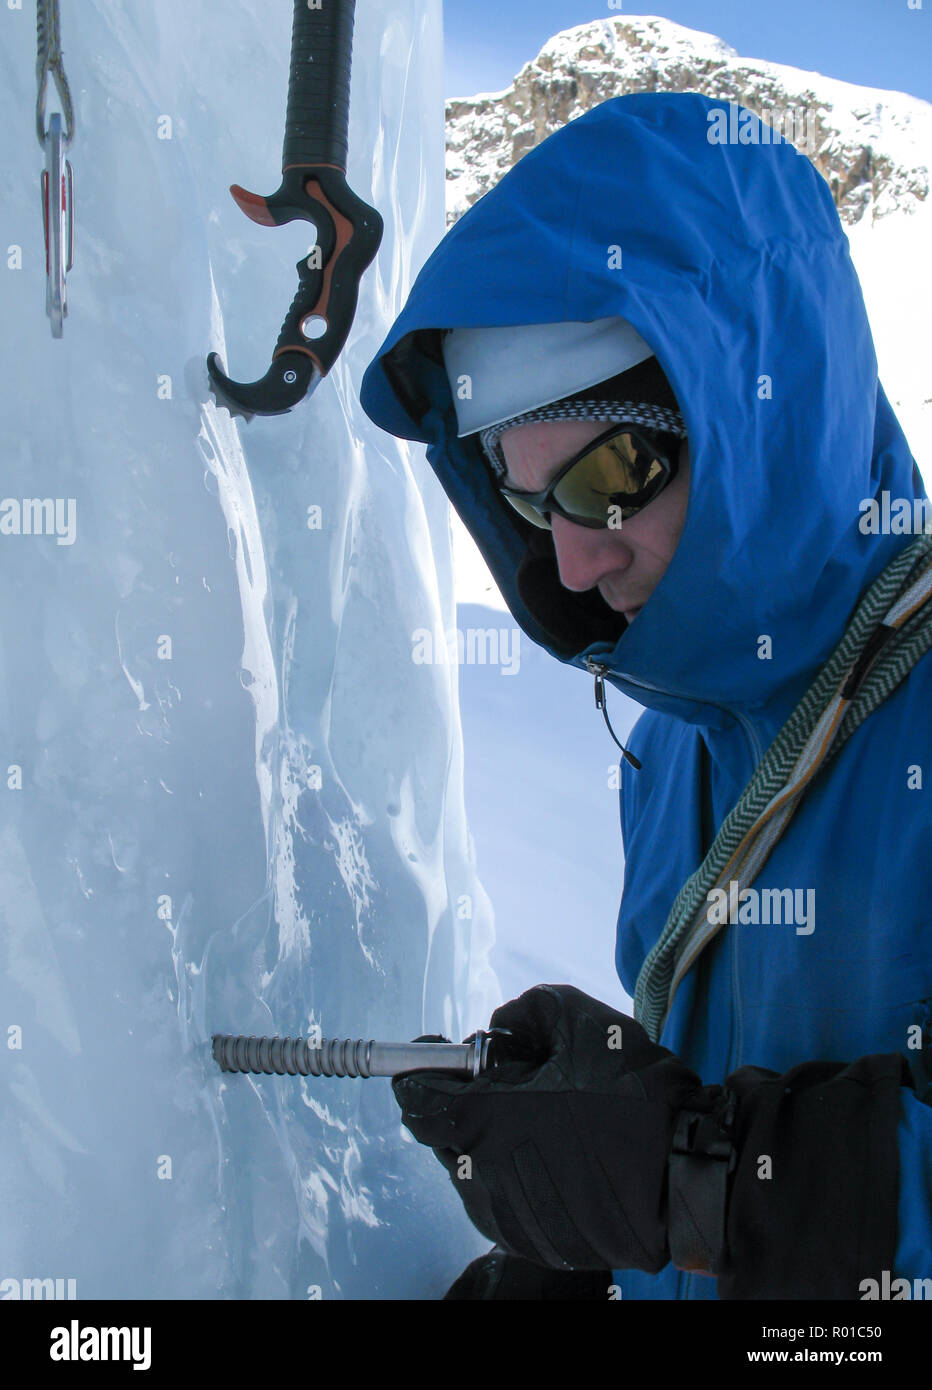 Grimpeur sur glace dans une veste bleue en tournant une vis dans une cascade de glace sur une ascension dans les Alpes de Suisse Banque D'Images